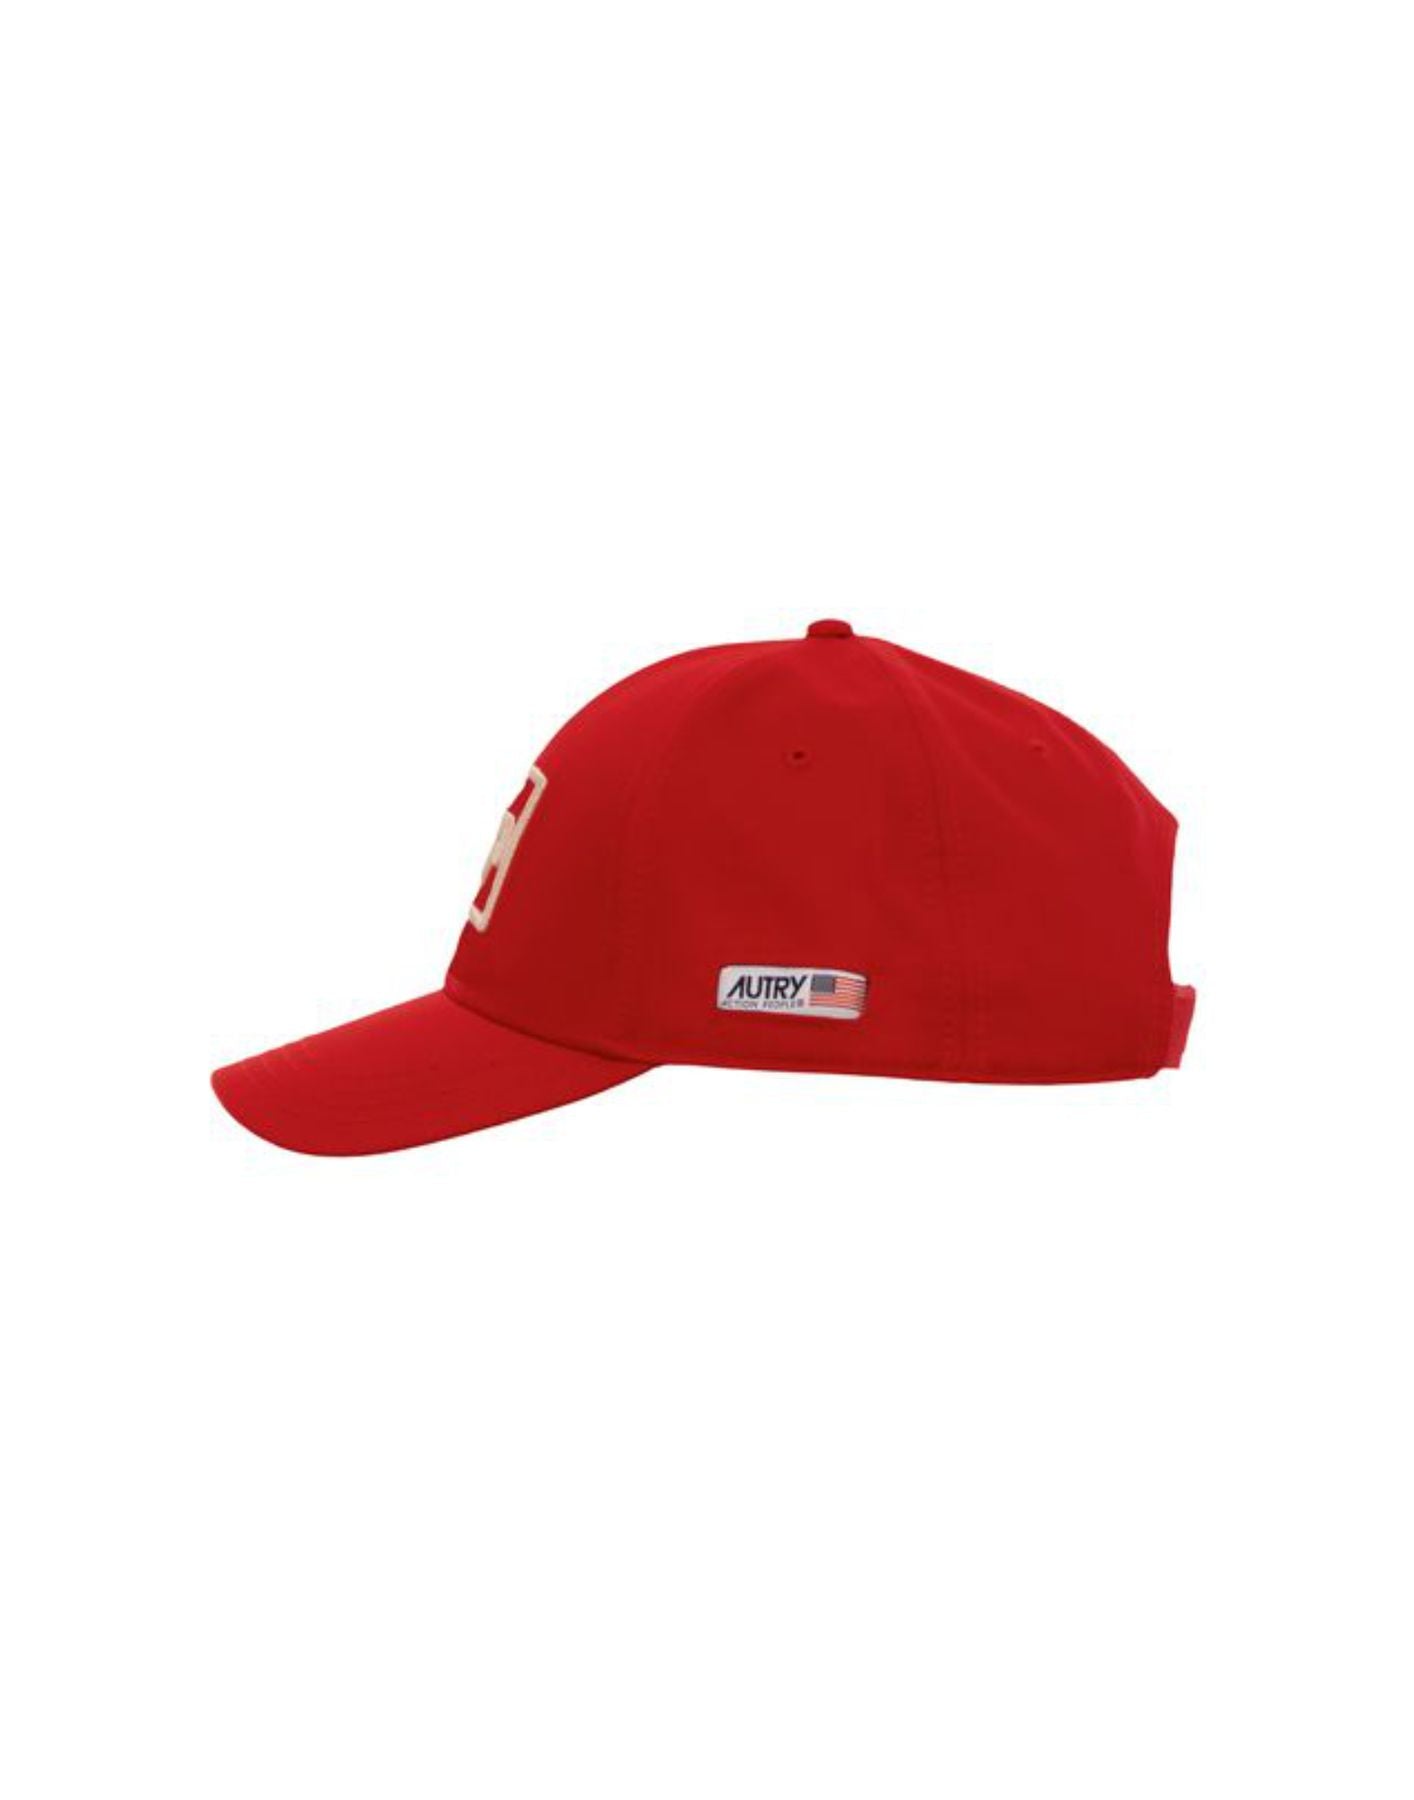 모자 Unisex ACIU 470R 빨간색 Autry